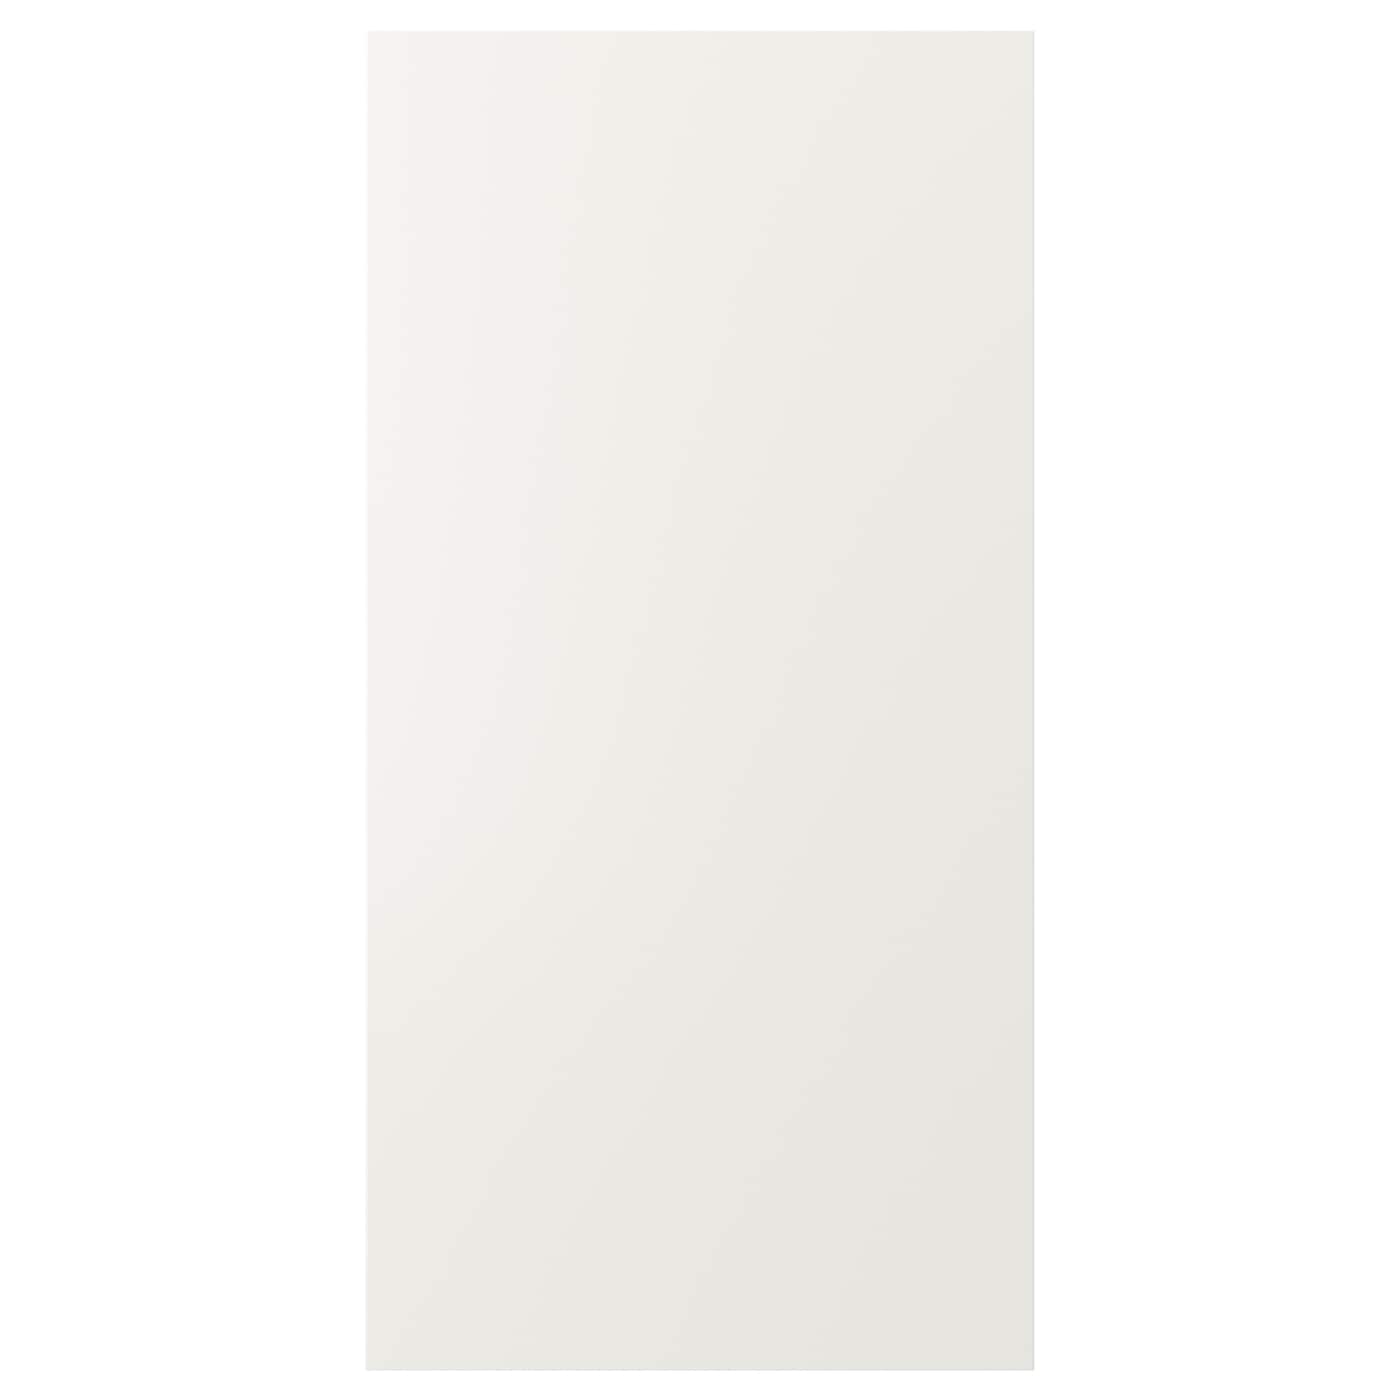 Дверца - IKEA VEDDINGE, 120х60 см, белый, ВЕДИНГЕ ИКЕА